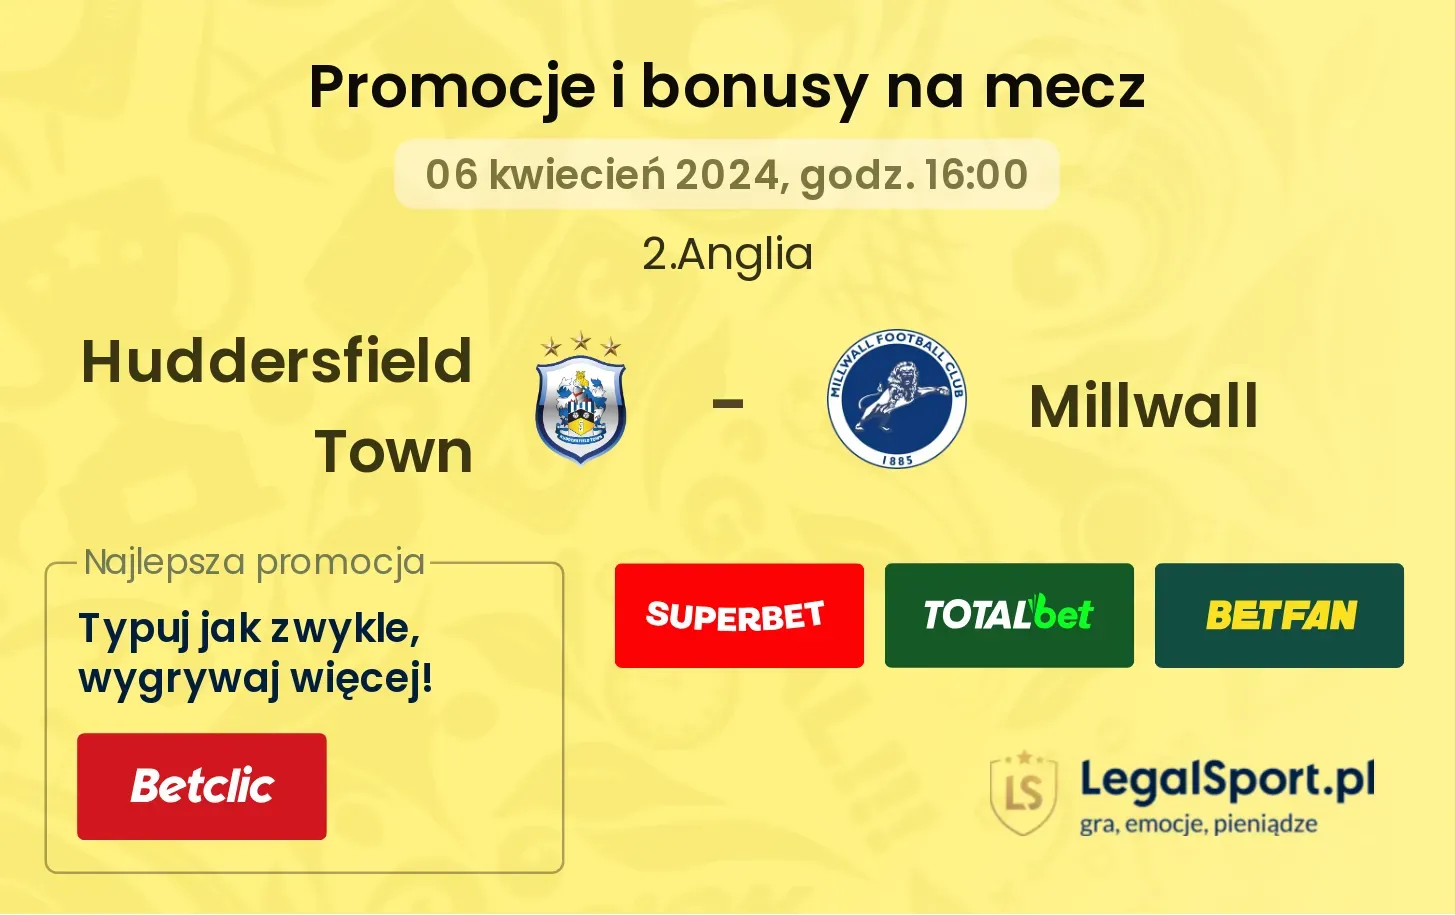 Huddersfield Town - Millwall promocje bonusy na mecz